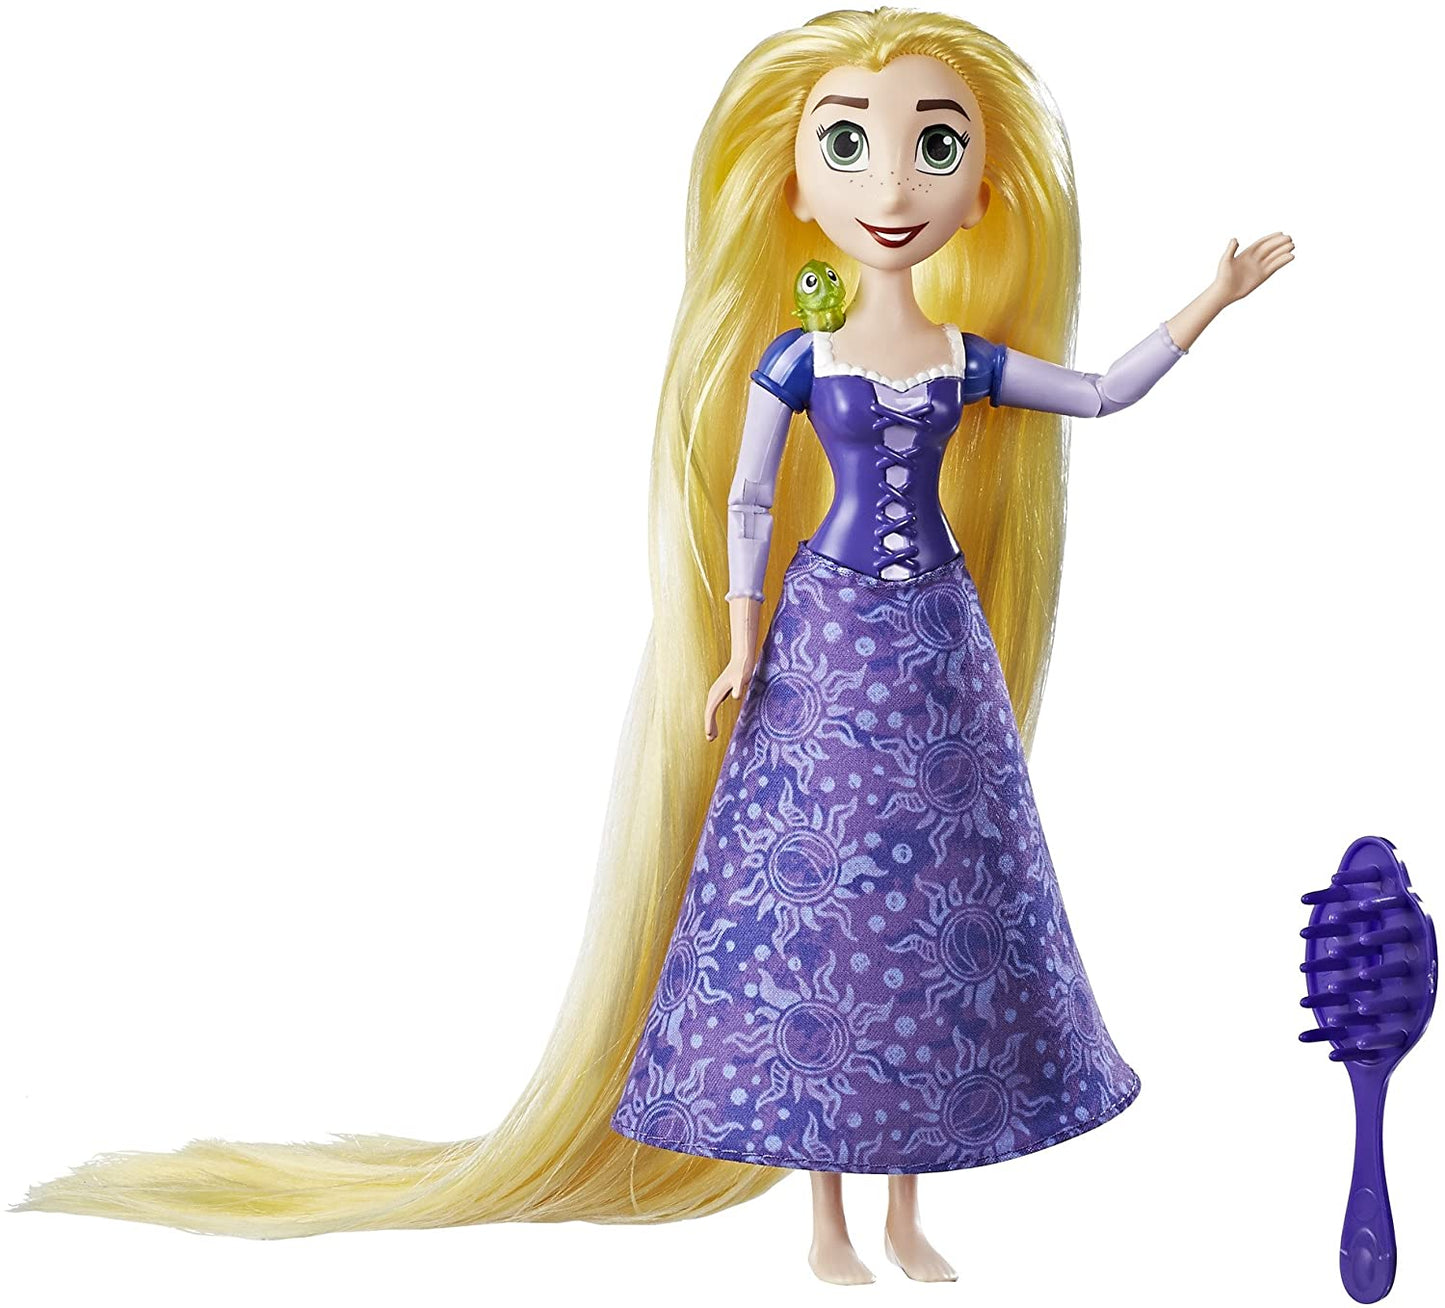 Disney Tangles Series - Musical Lights Rapunzel